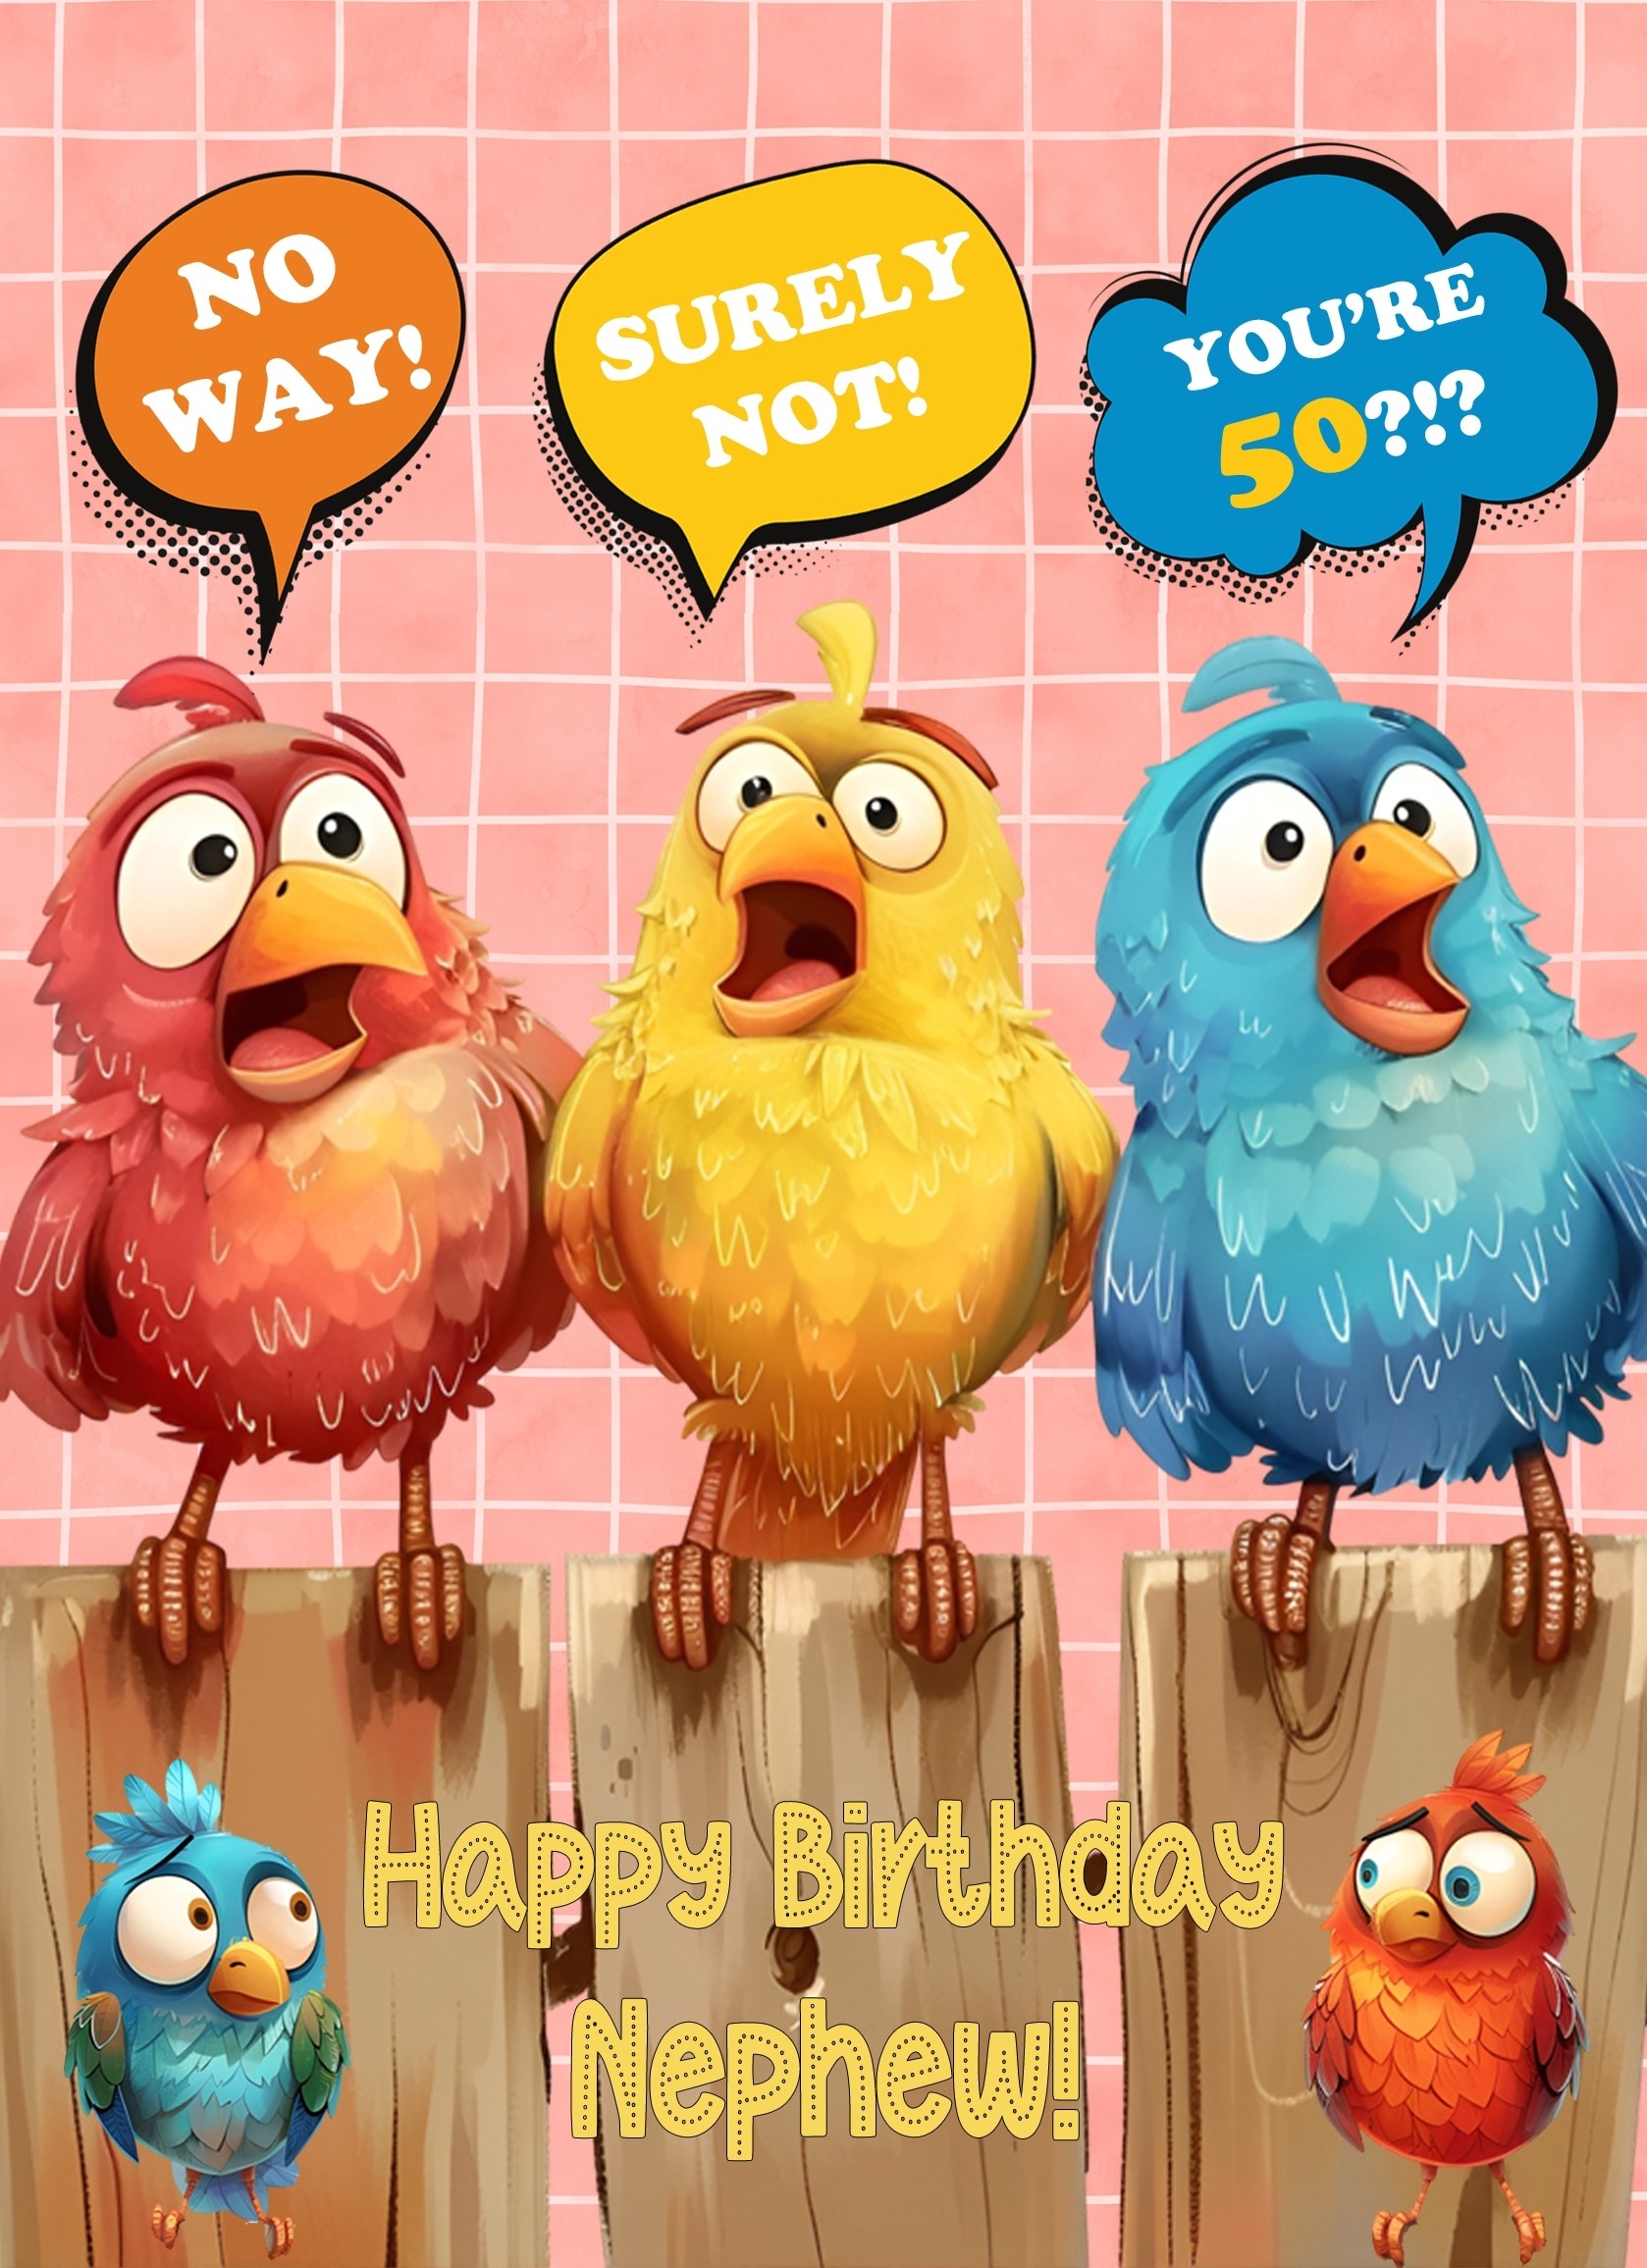 Nephew 50th Birthday Card (Funny Birds Surprised)